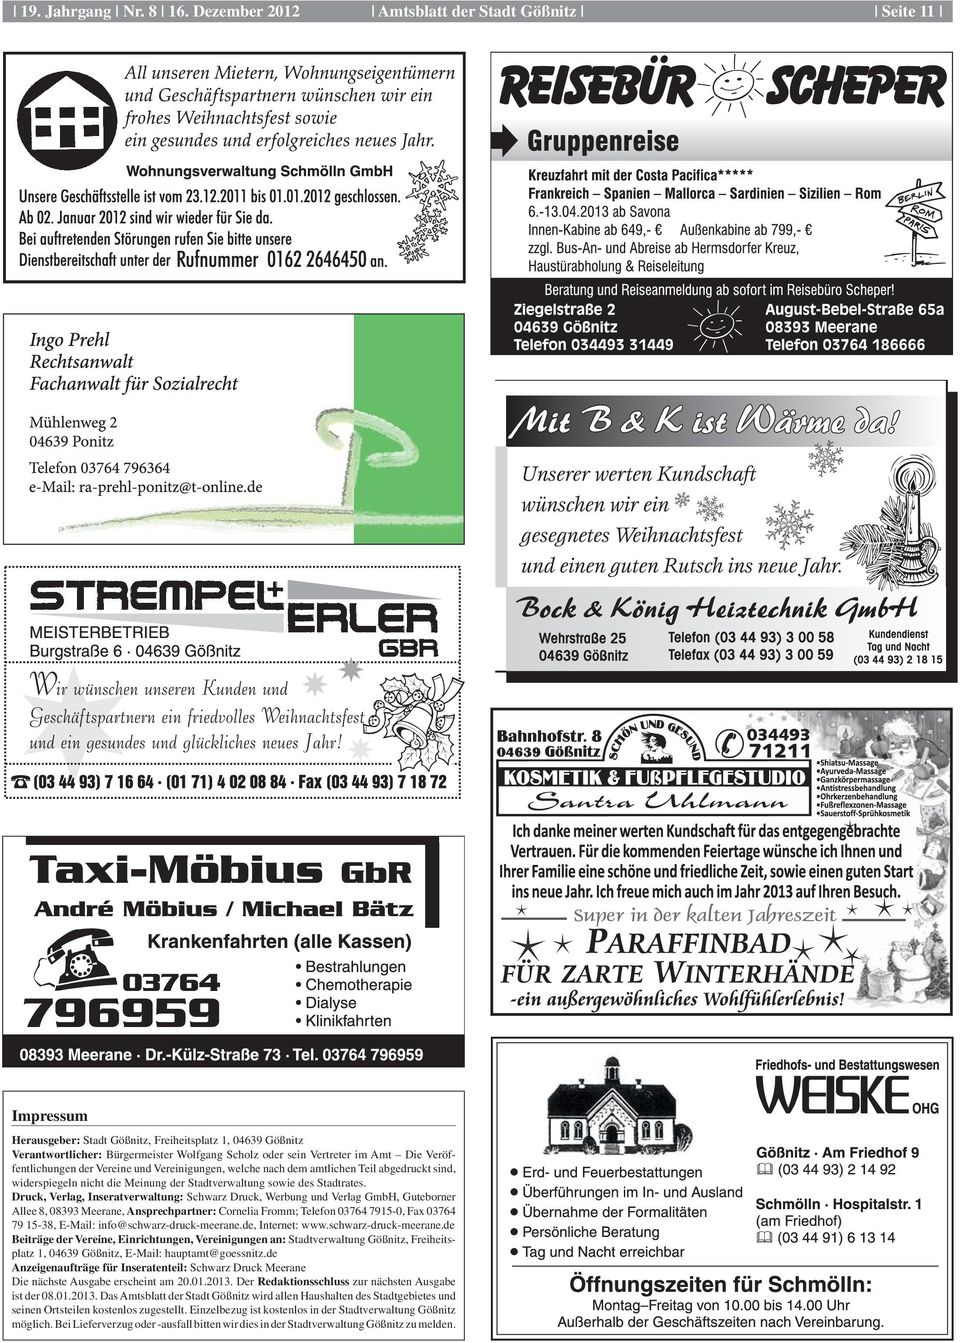 Druck, Verlag, Inseratverwaltung: Schwarz Druck, Werbung und Verlag GmbH, Guteborner Allee 8, 08393 Mee rane, Ansprechpartner: Cornelia Fromm; Telefon 03764 7915-0, Fax 03764 79 15-38, E-Mail: